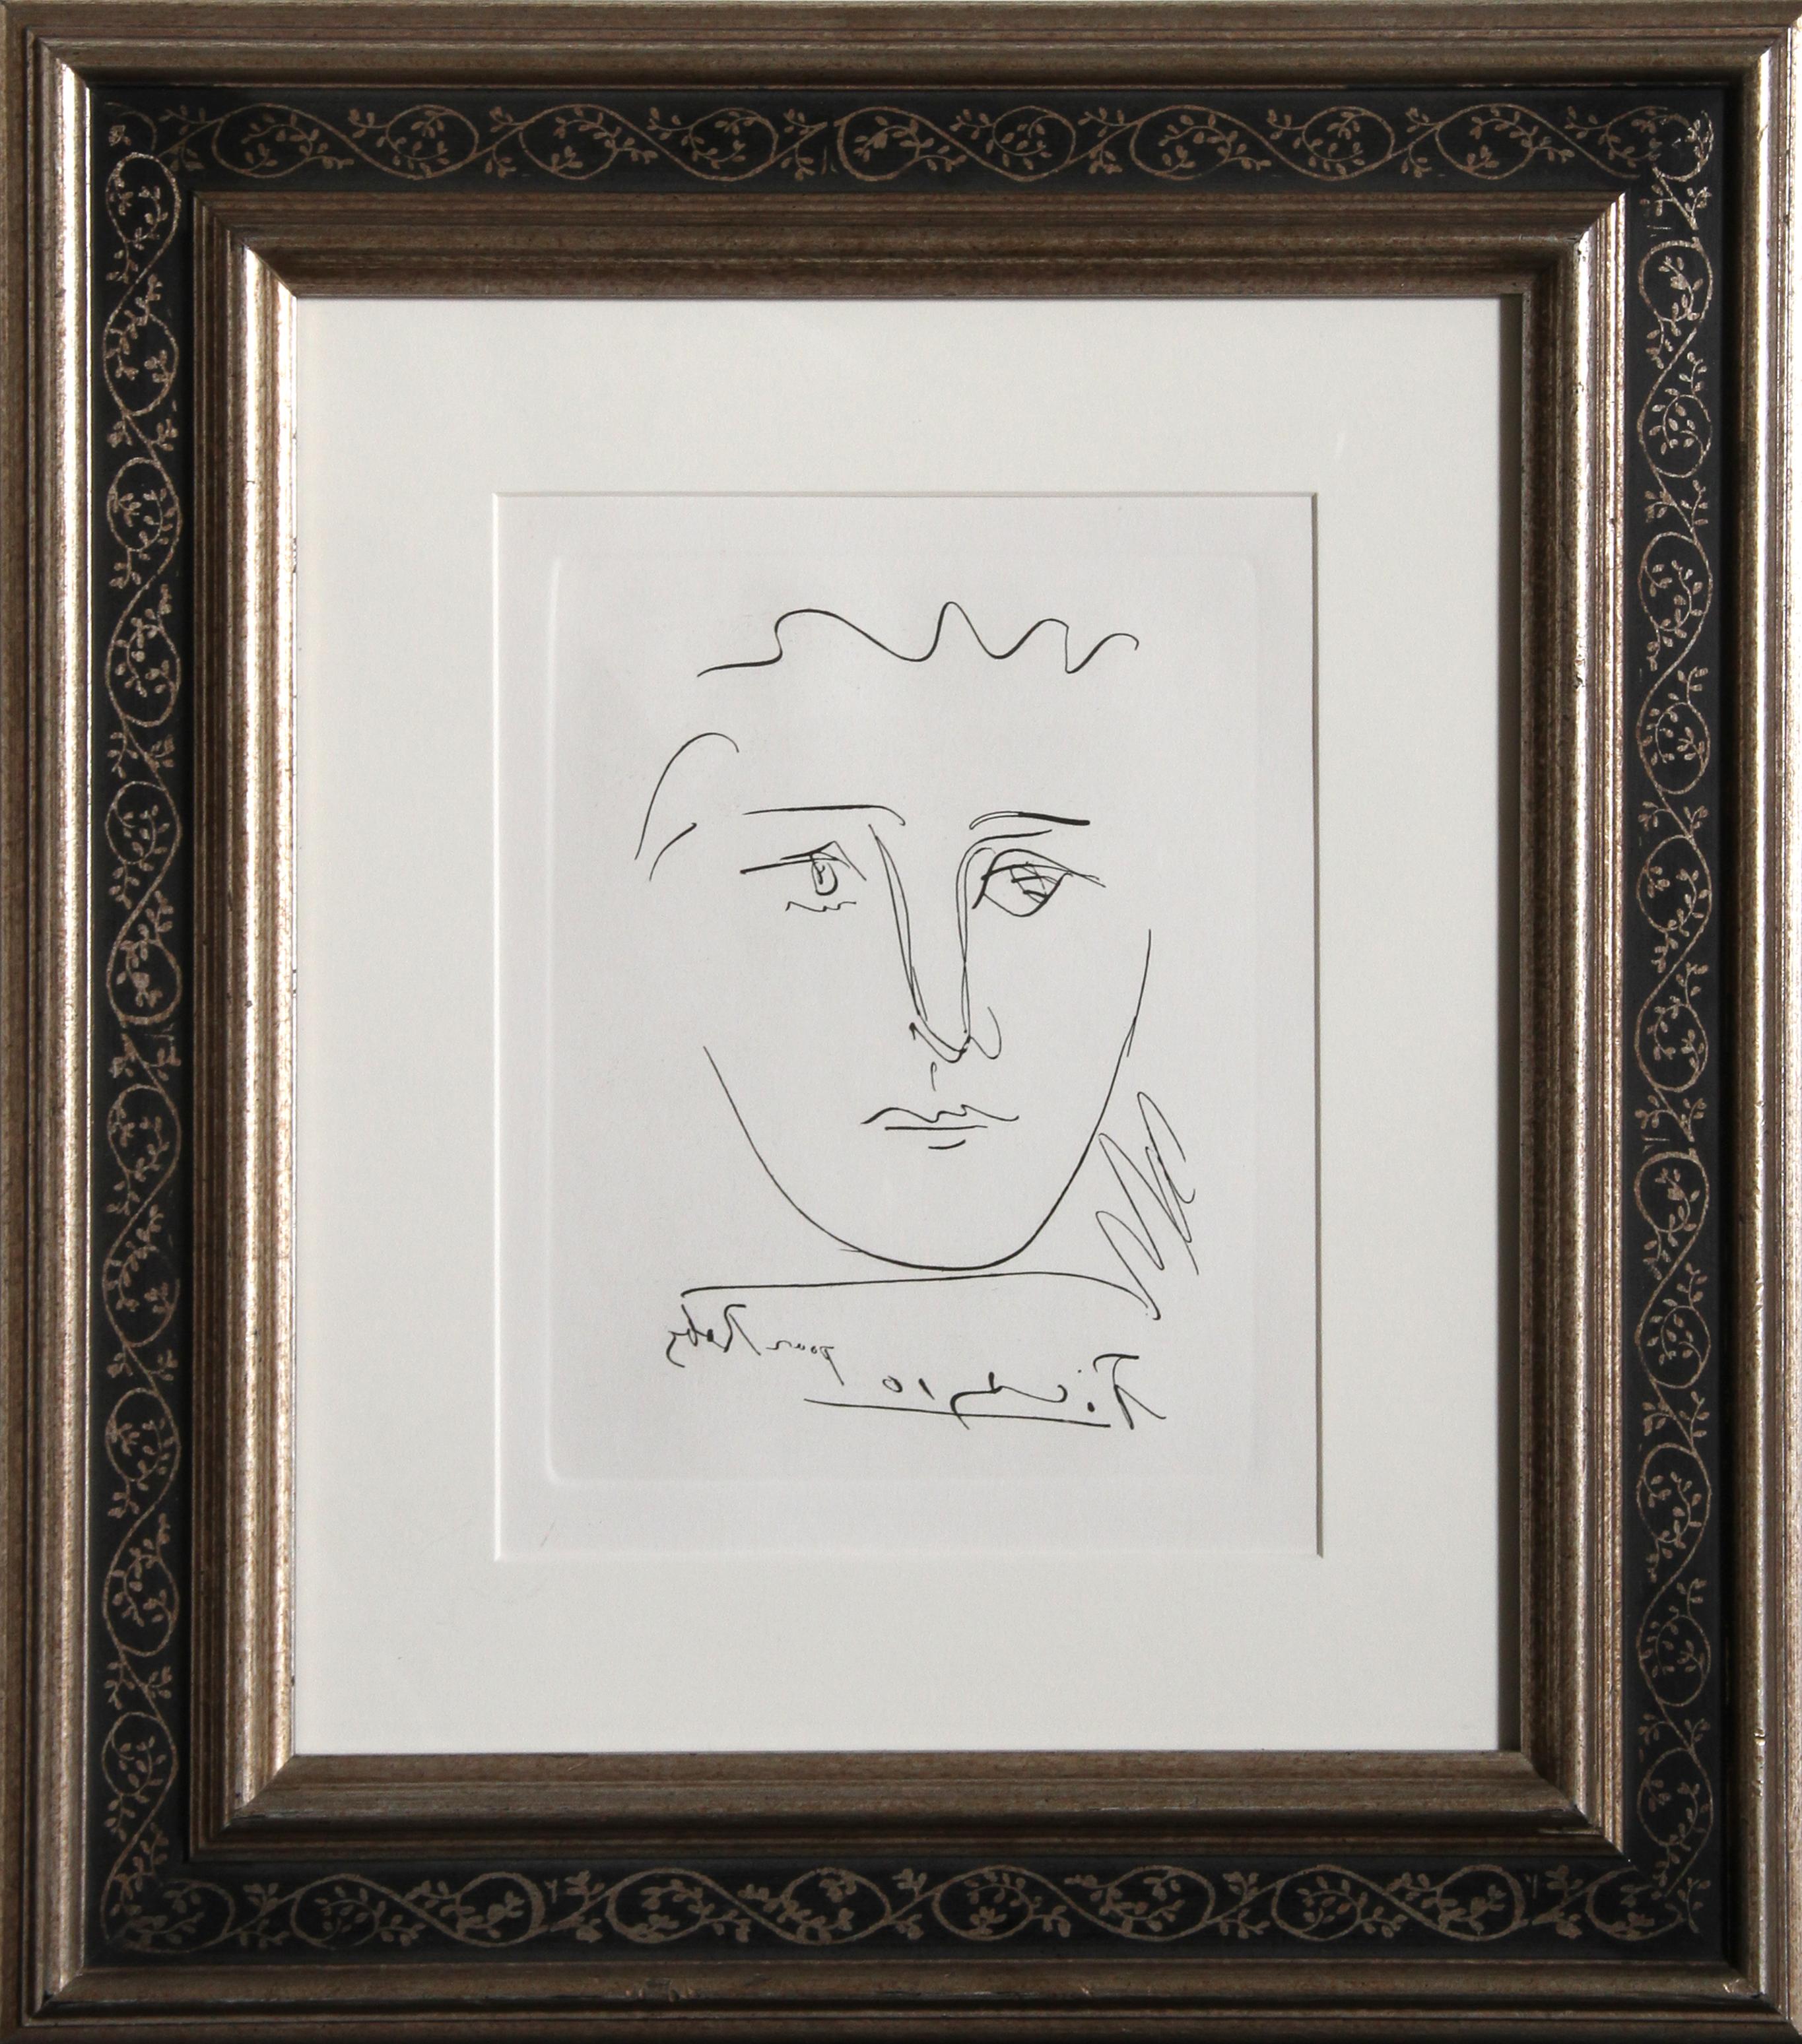 Dieses minimalistische Porträt von Pablo Picasso zeichnet sich durch dünne Linien aus, die die Gesichtszüge umreißen und einrahmen, ohne die schlichte, frische Komposition zu vereinfachen. Nachdruck einer Radierung, die von der Collector's Guild um